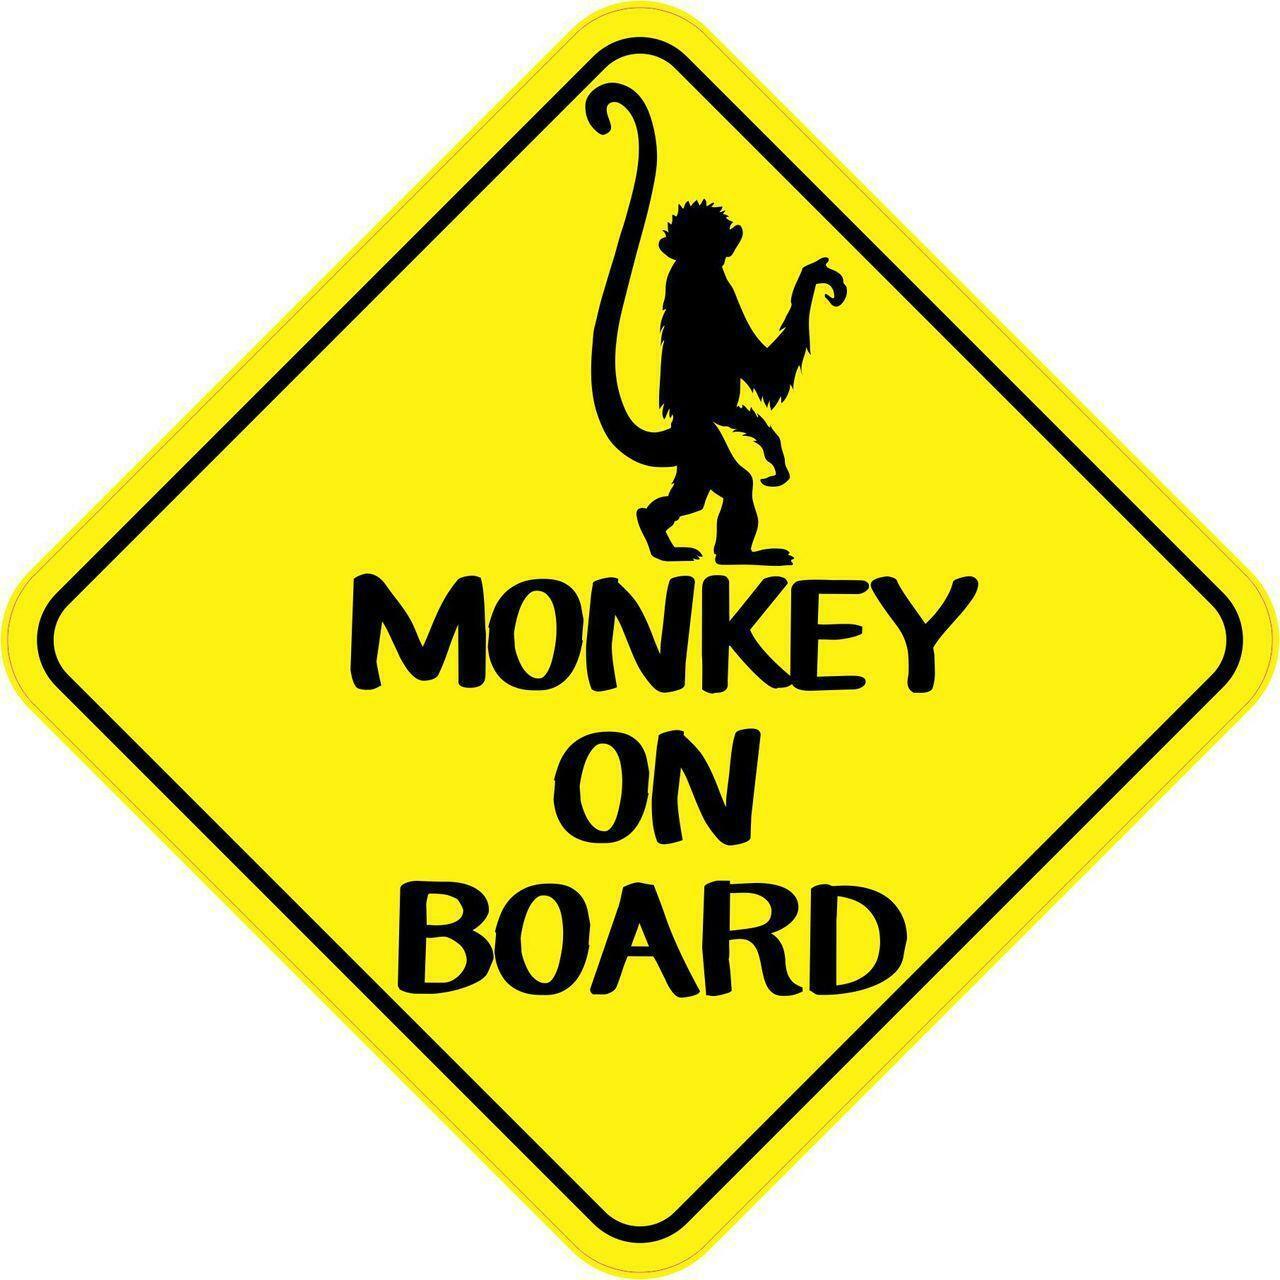 6in x 6in Monkey on Board Sticker Car Truck Vehicle Bumper Decal